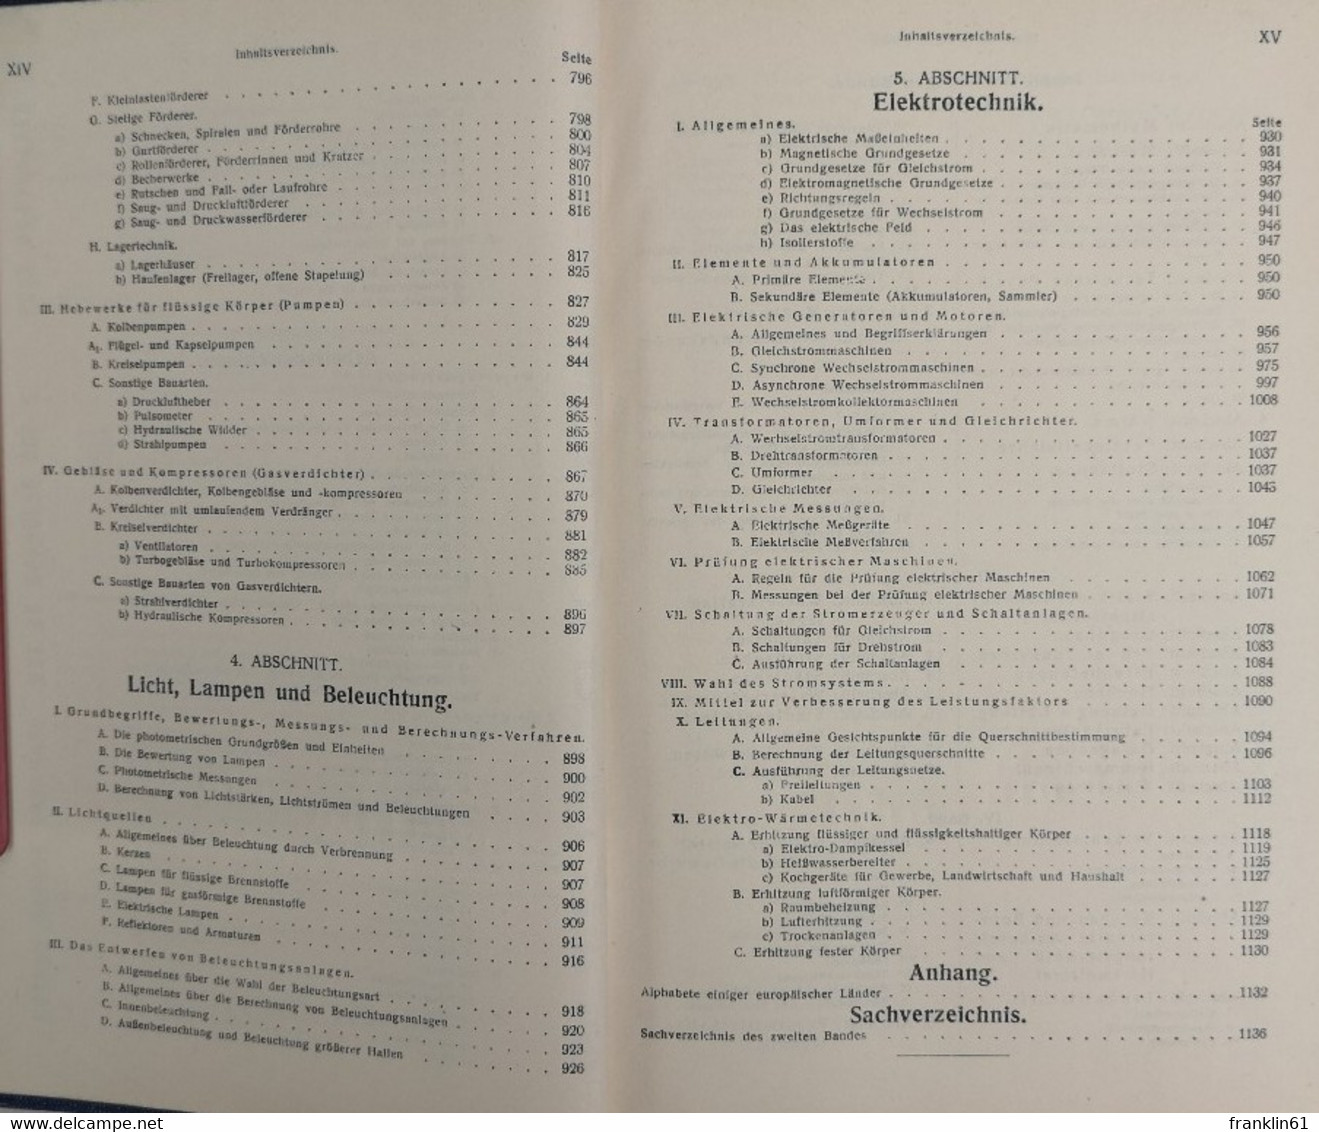 HÜTTE. Des Ingenieurs Taschenbuch. II. Band.